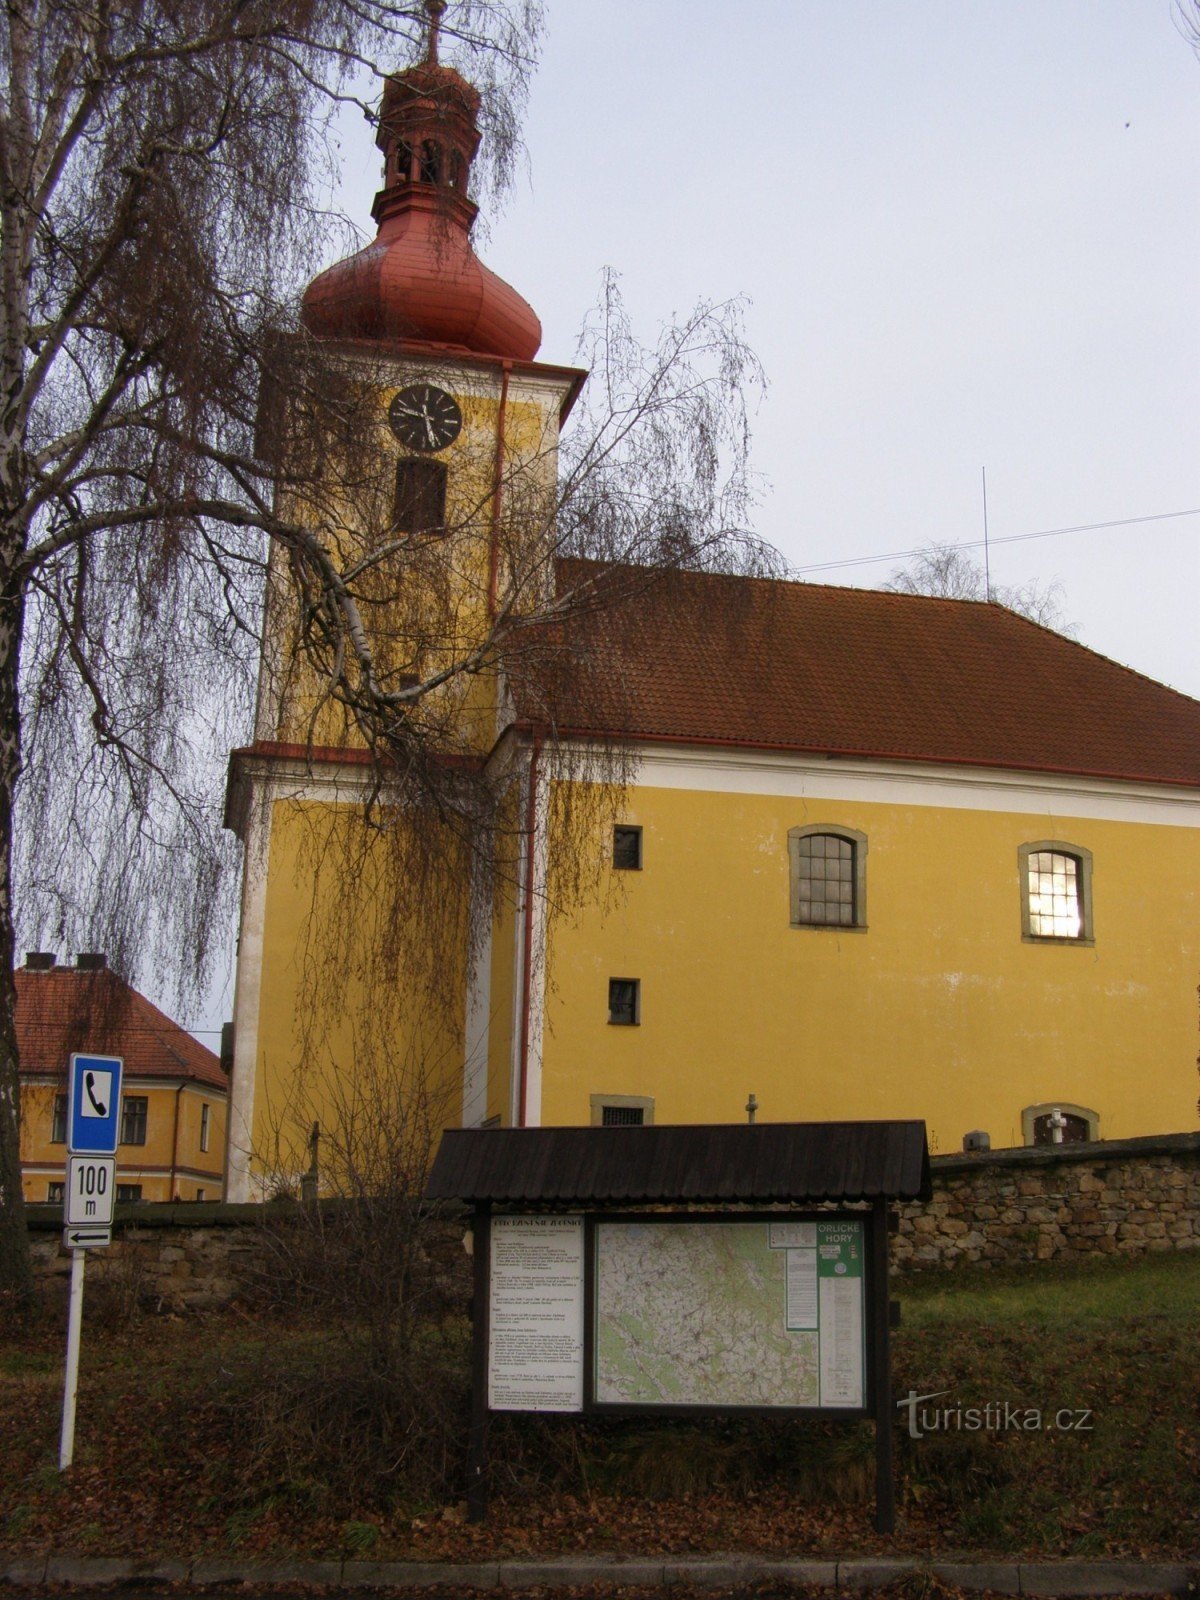 ngã tư du lịch - Rybná nad Zdobnicí, nhà thờ